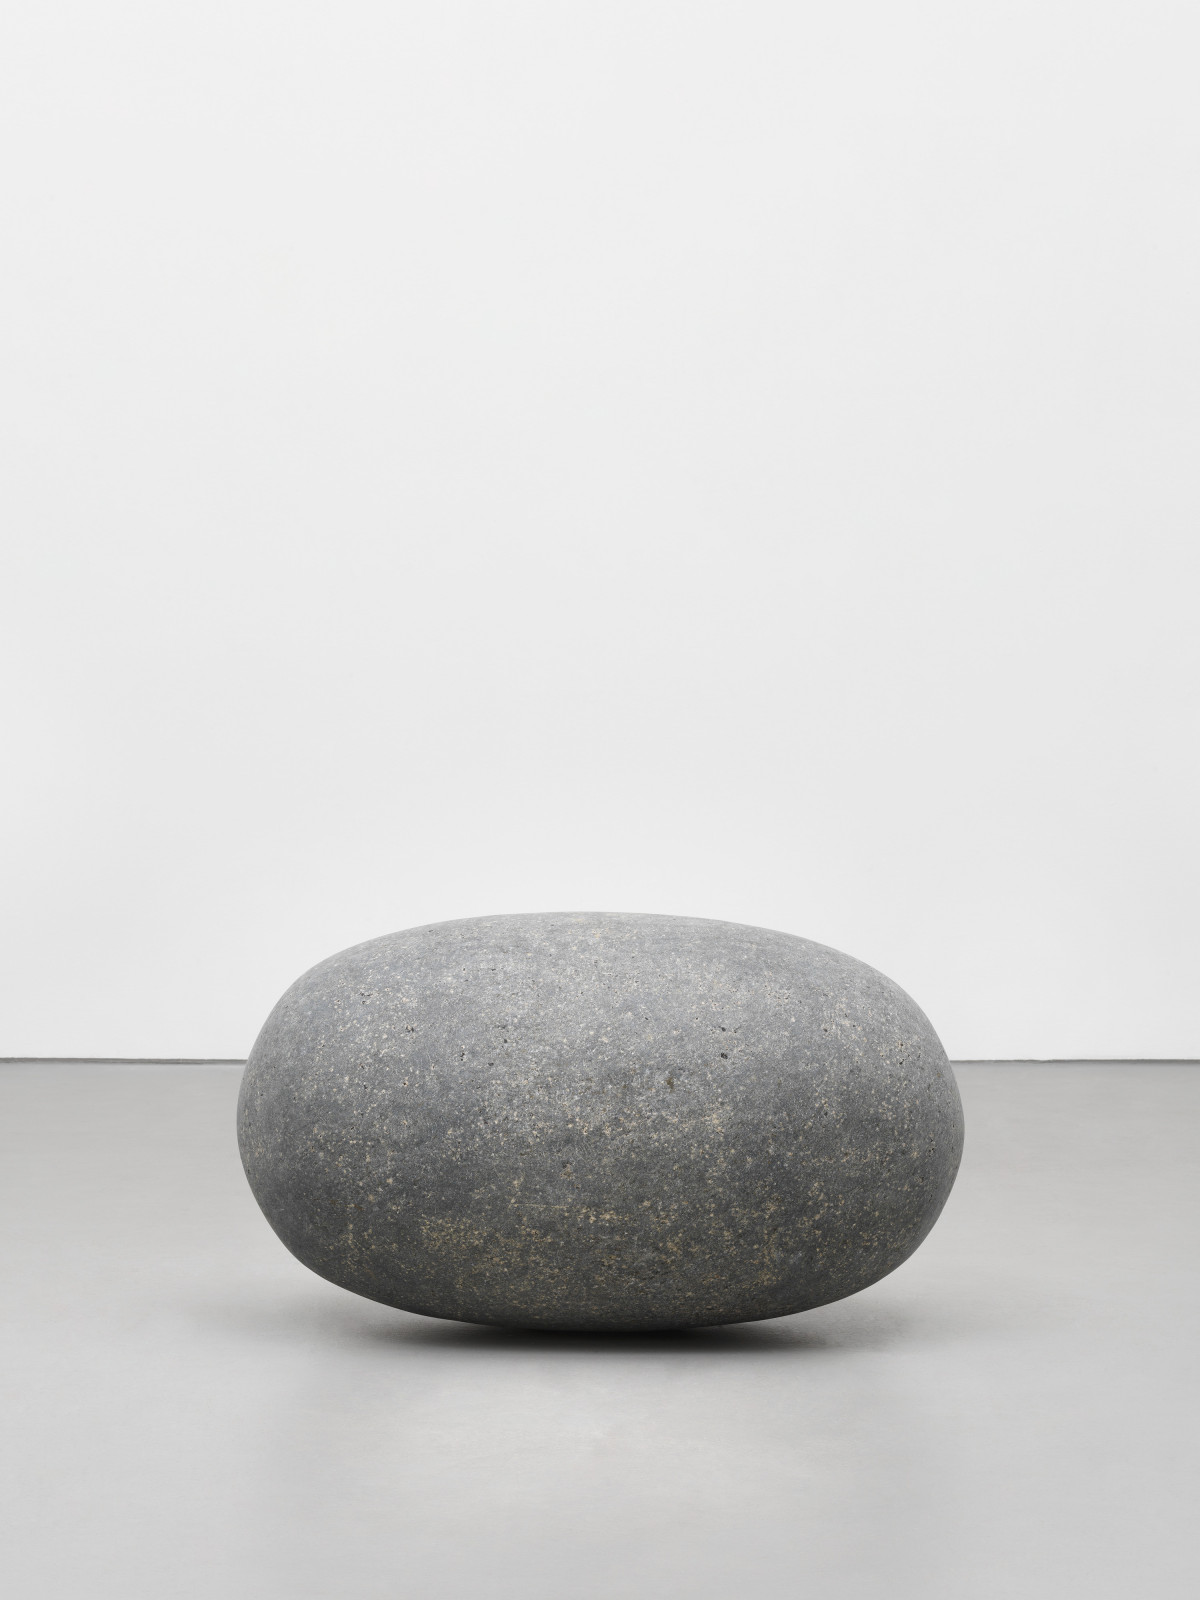 Wolfgang Laib, ‘Brahmanda’, 2014-2022, Indischer schwarzer Granit